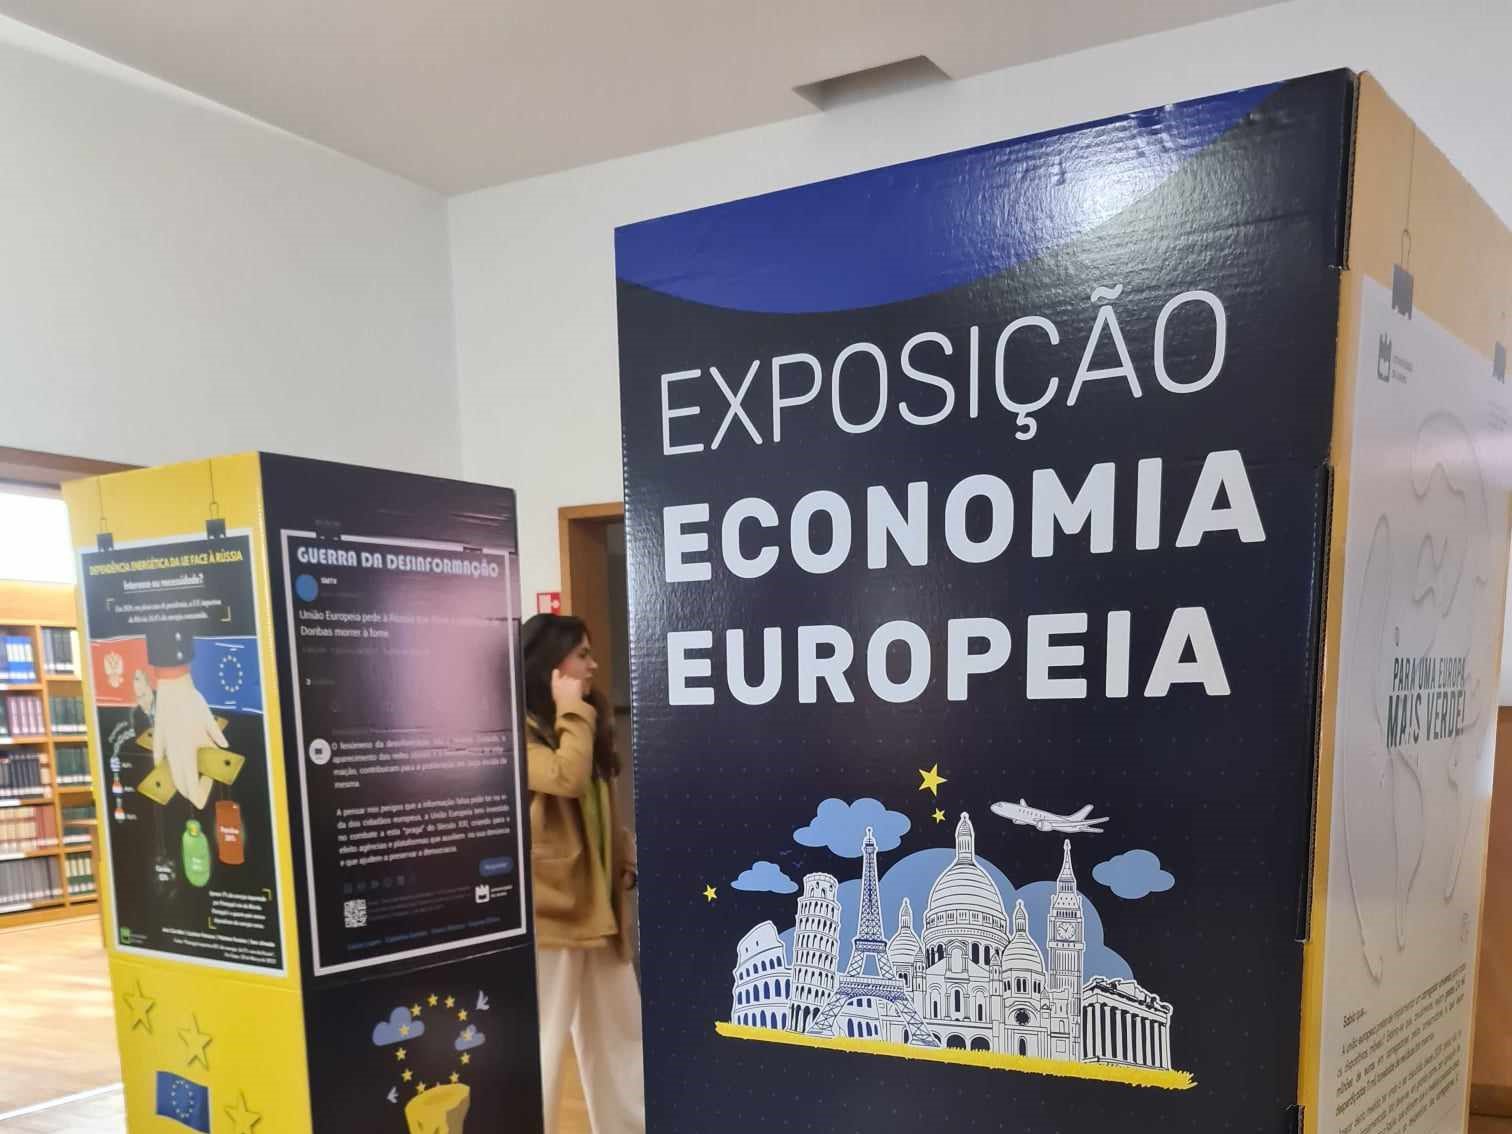 Exposição “Economia Europeia” mostra desafios da construção da EU 